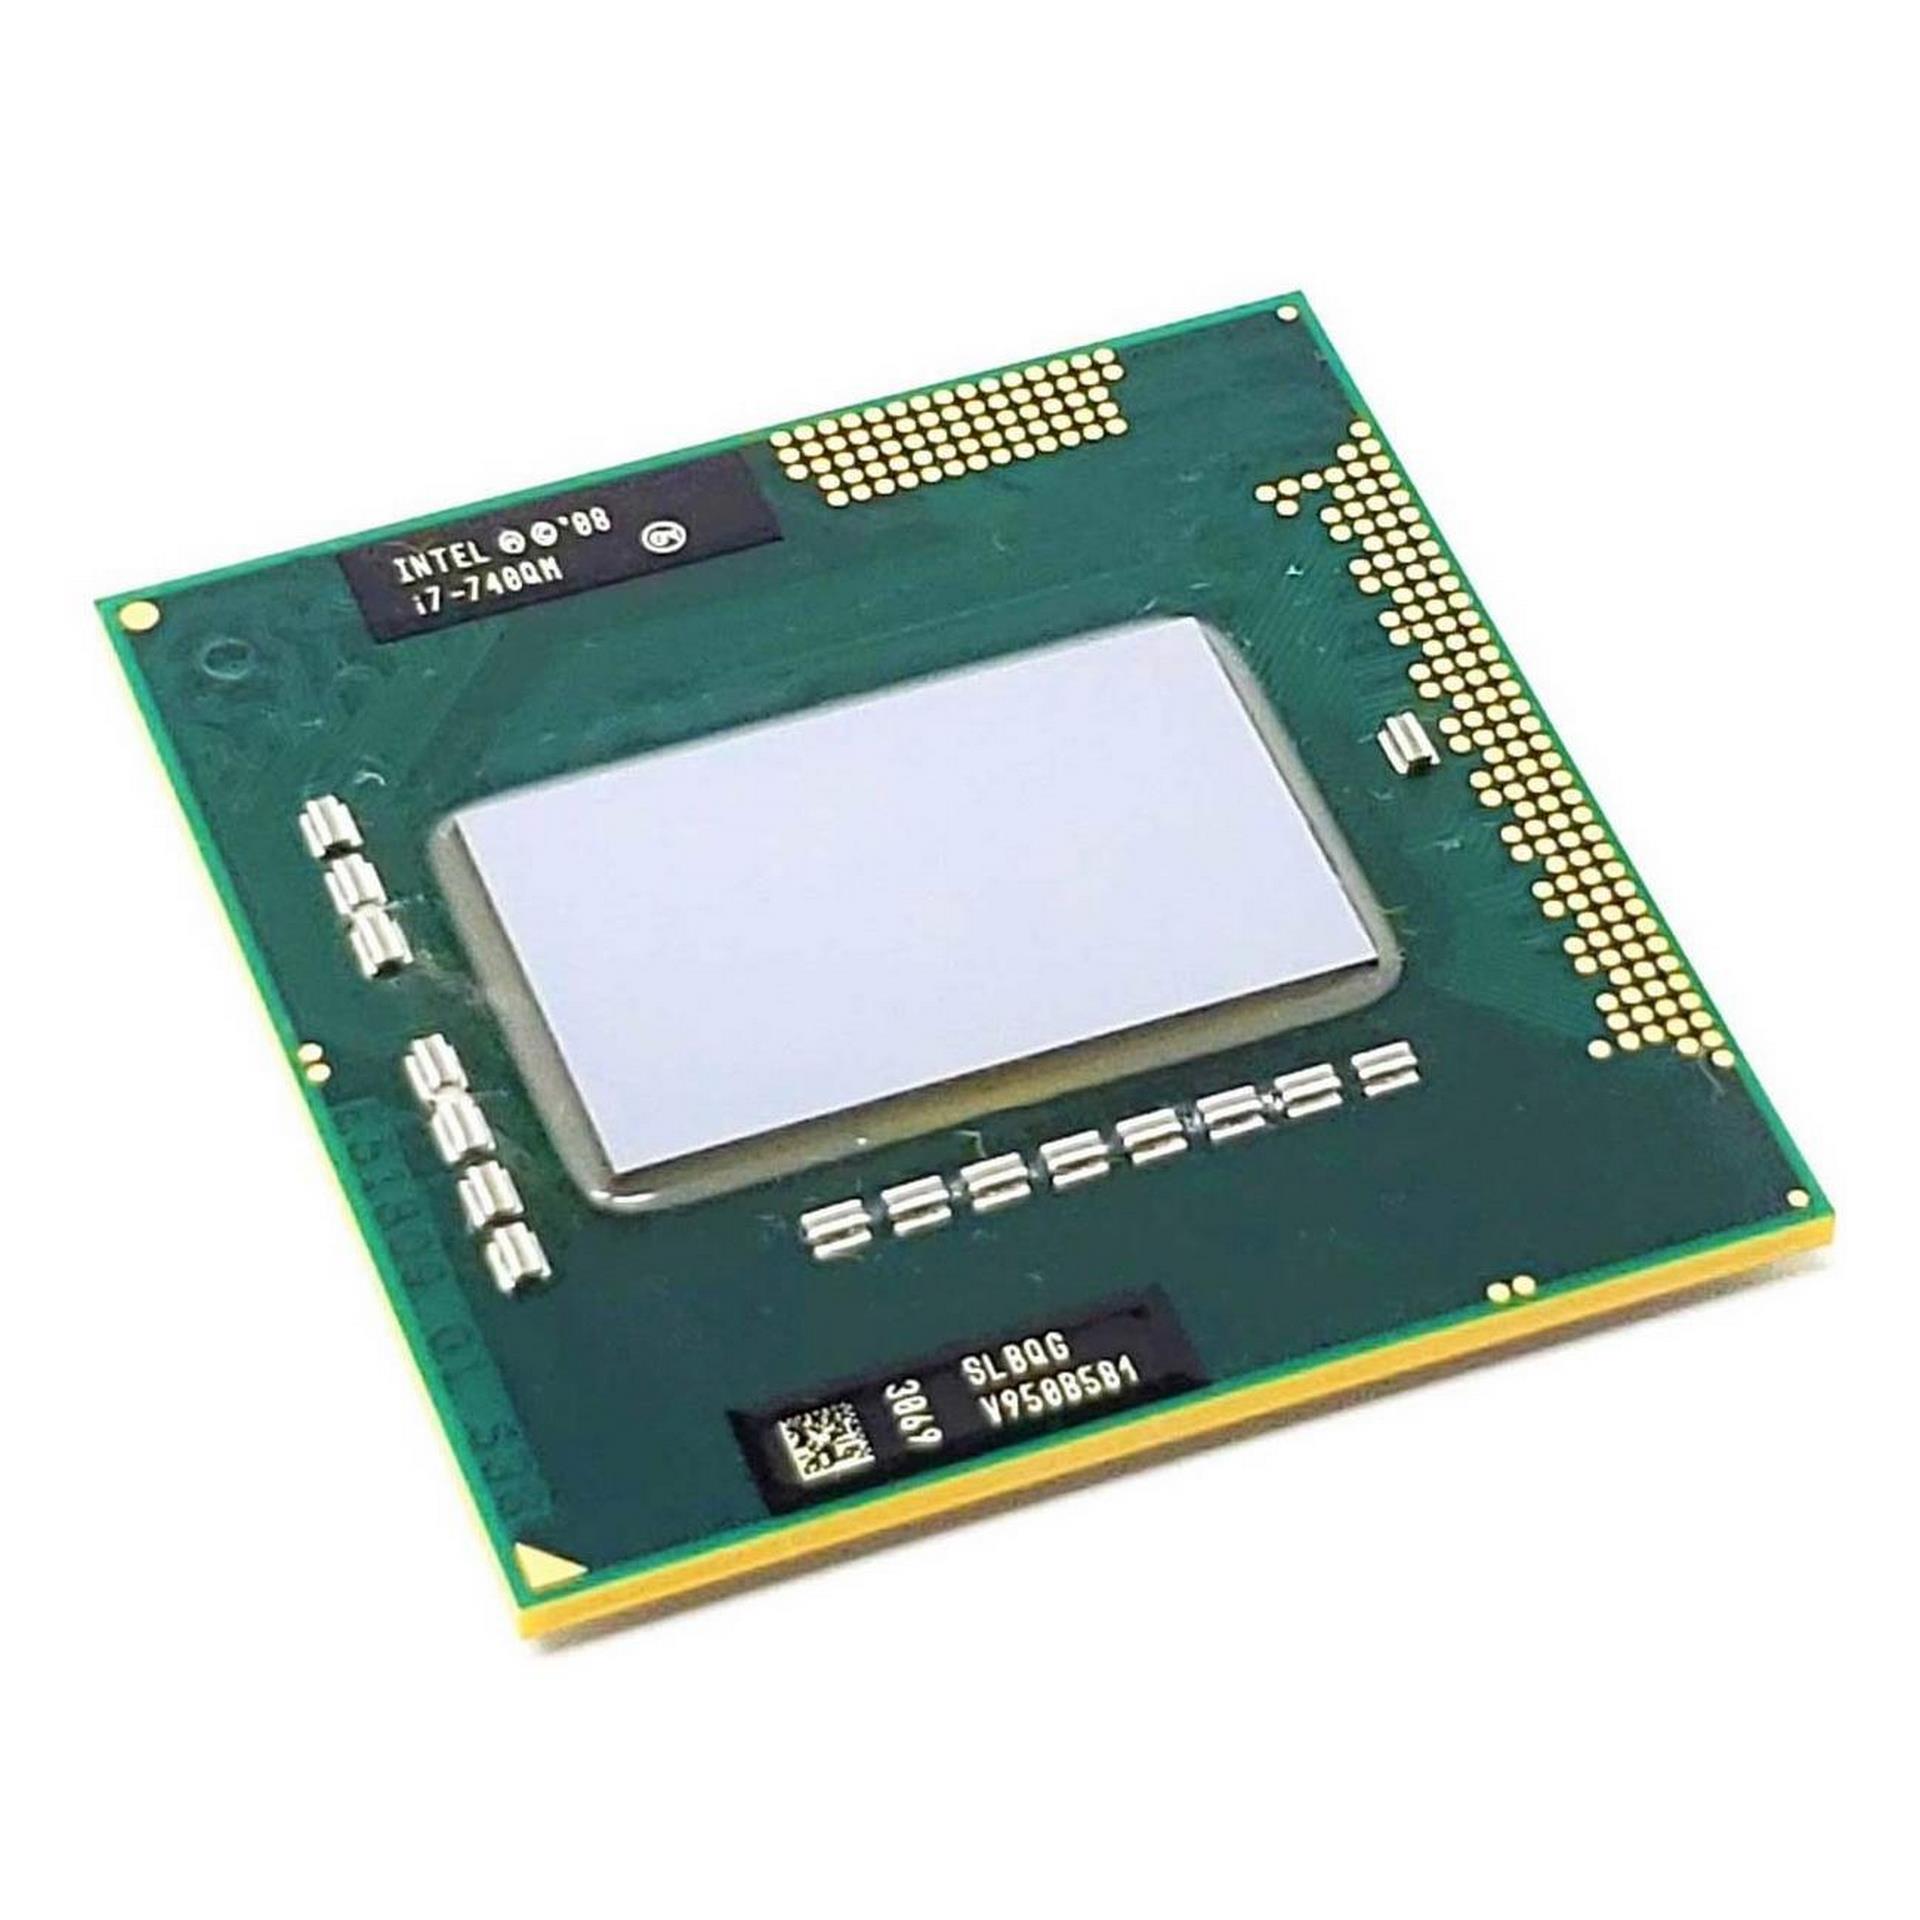 پردازنده اینتل مدل i7 740 QM